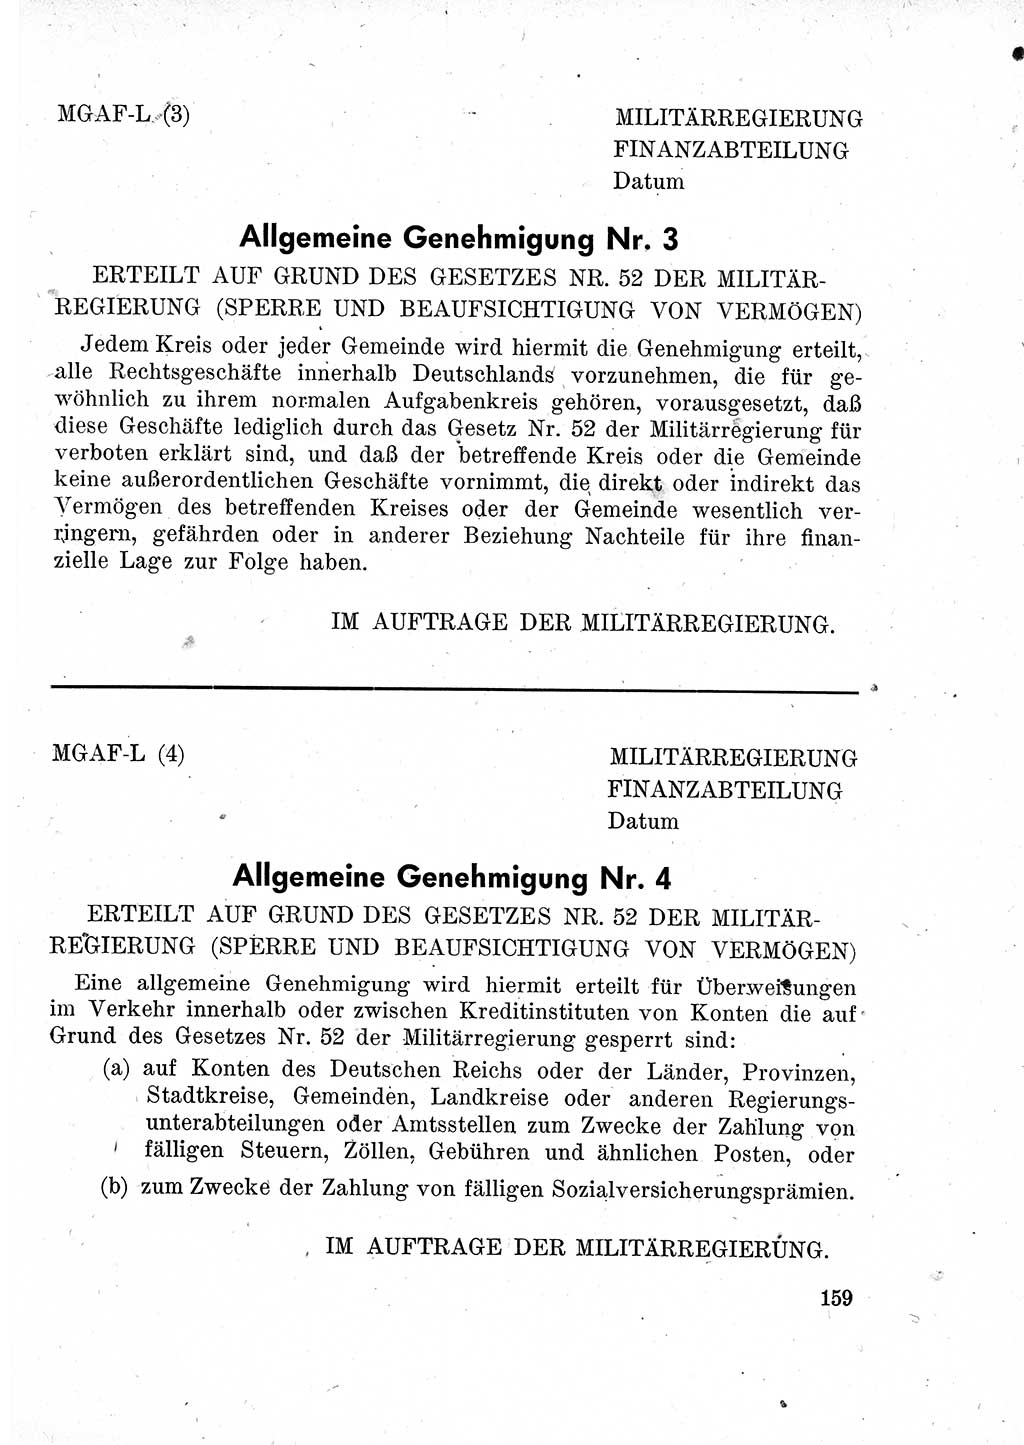 Das Recht der Besatzungsmacht (Deutschland), Proklamationen, Deklerationen, Verordnungen, Gesetze und Bekanntmachungen 1947, Seite 159 (R. Bes. Dtl. 1947, S. 159)